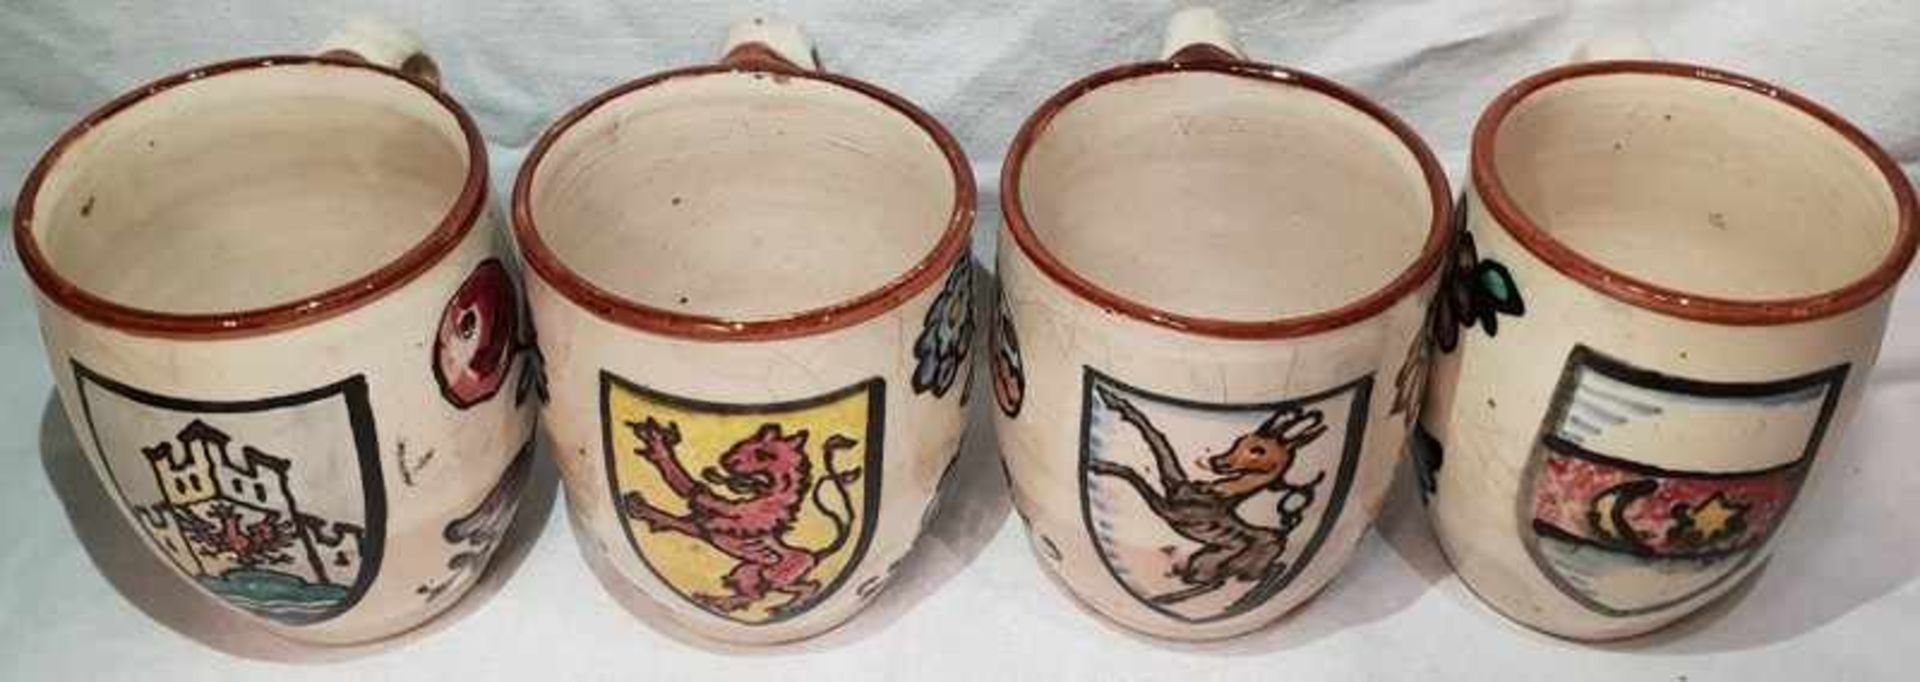 Satz bestehend aus 4 Keramikbechern mit verschiedenen Wappen bemalt, Keramik, glasiert, Höhe 10 cm ,